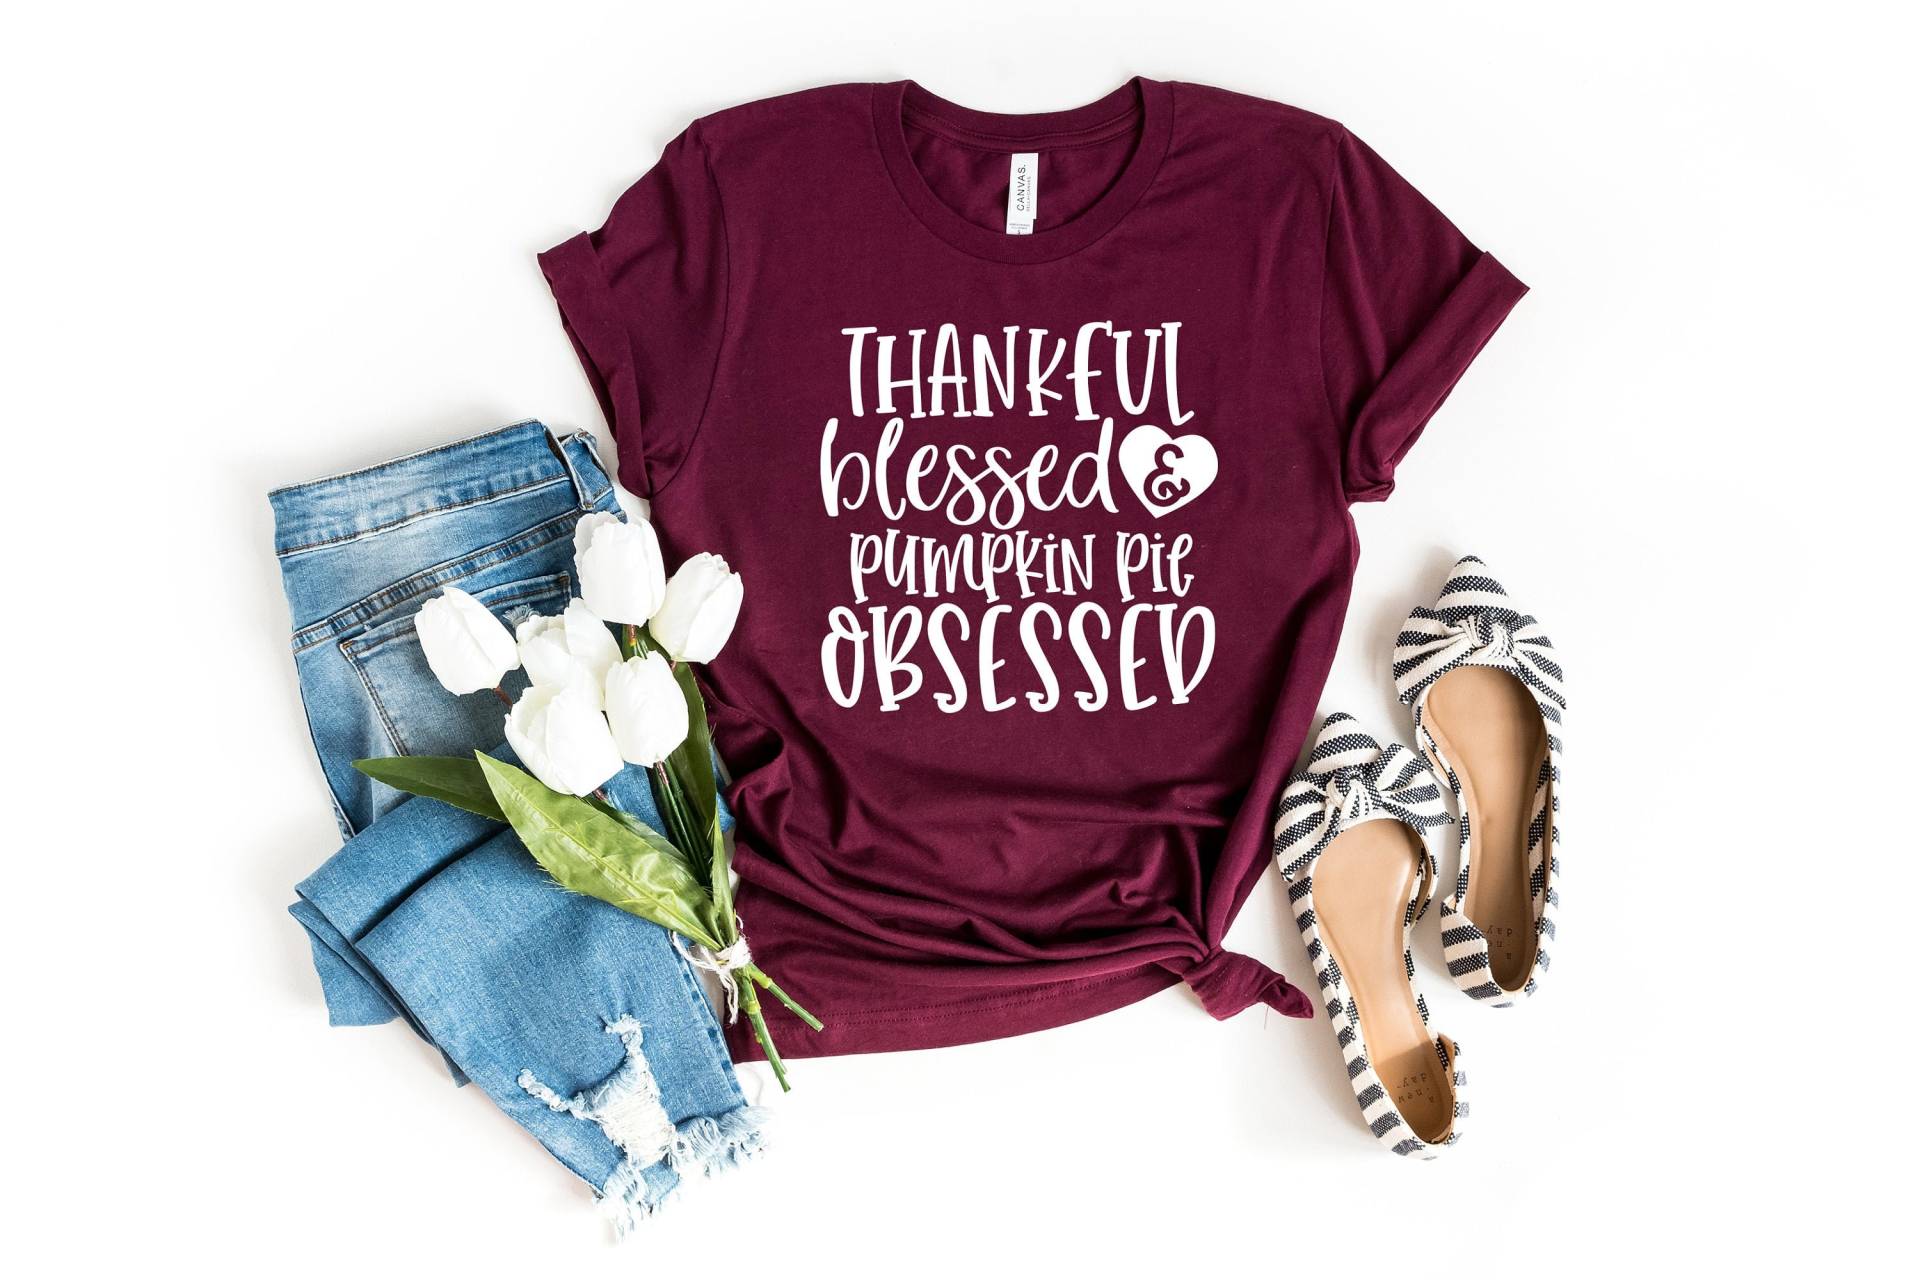 Dankbar Gesegnet & Kürbiskuchen Besessen Shirt, Kürbis Gewürz, Herbst Tees, Shirts Für Frauen von GirliesGalore